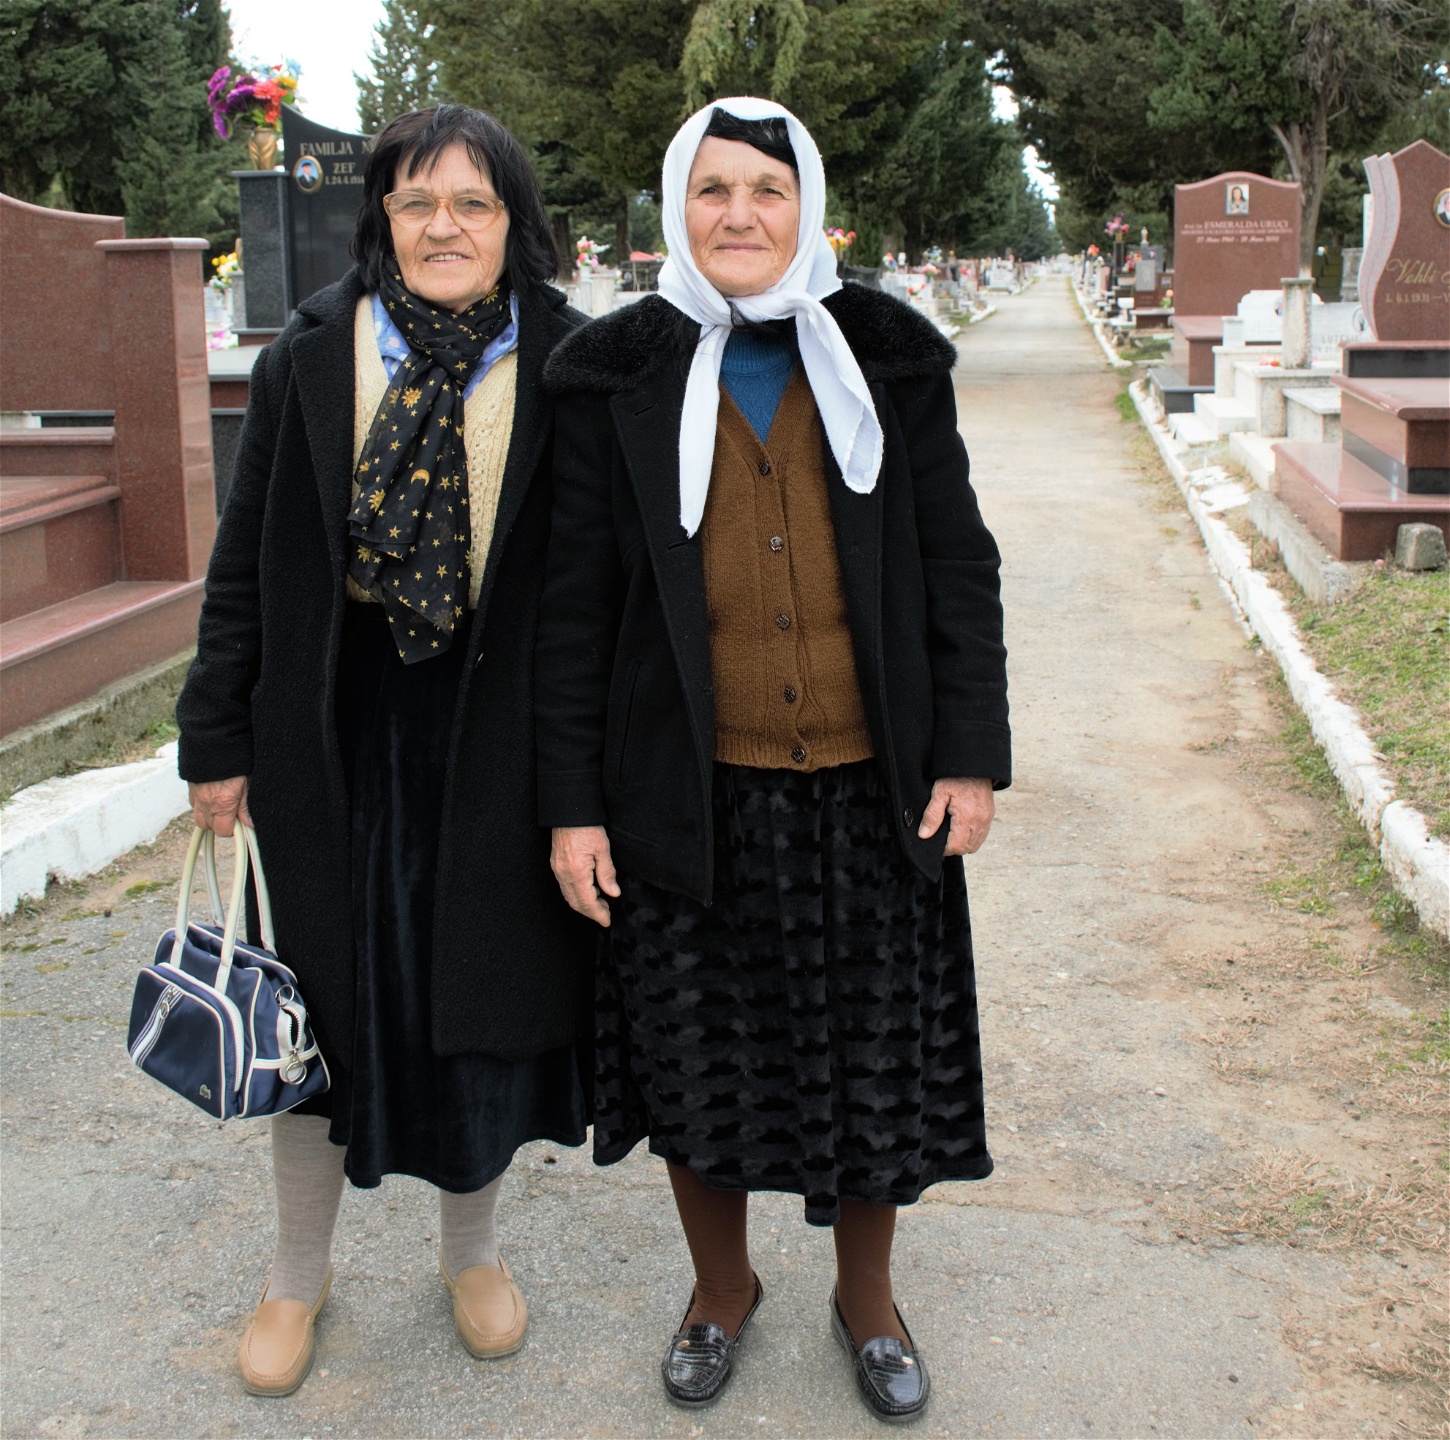 Systrarna Bedrije Staka och Stafije Tusha i Shkoder i norra Albanien säger att livet ändå är mycket bättre nu än under kommunistregimens styre.